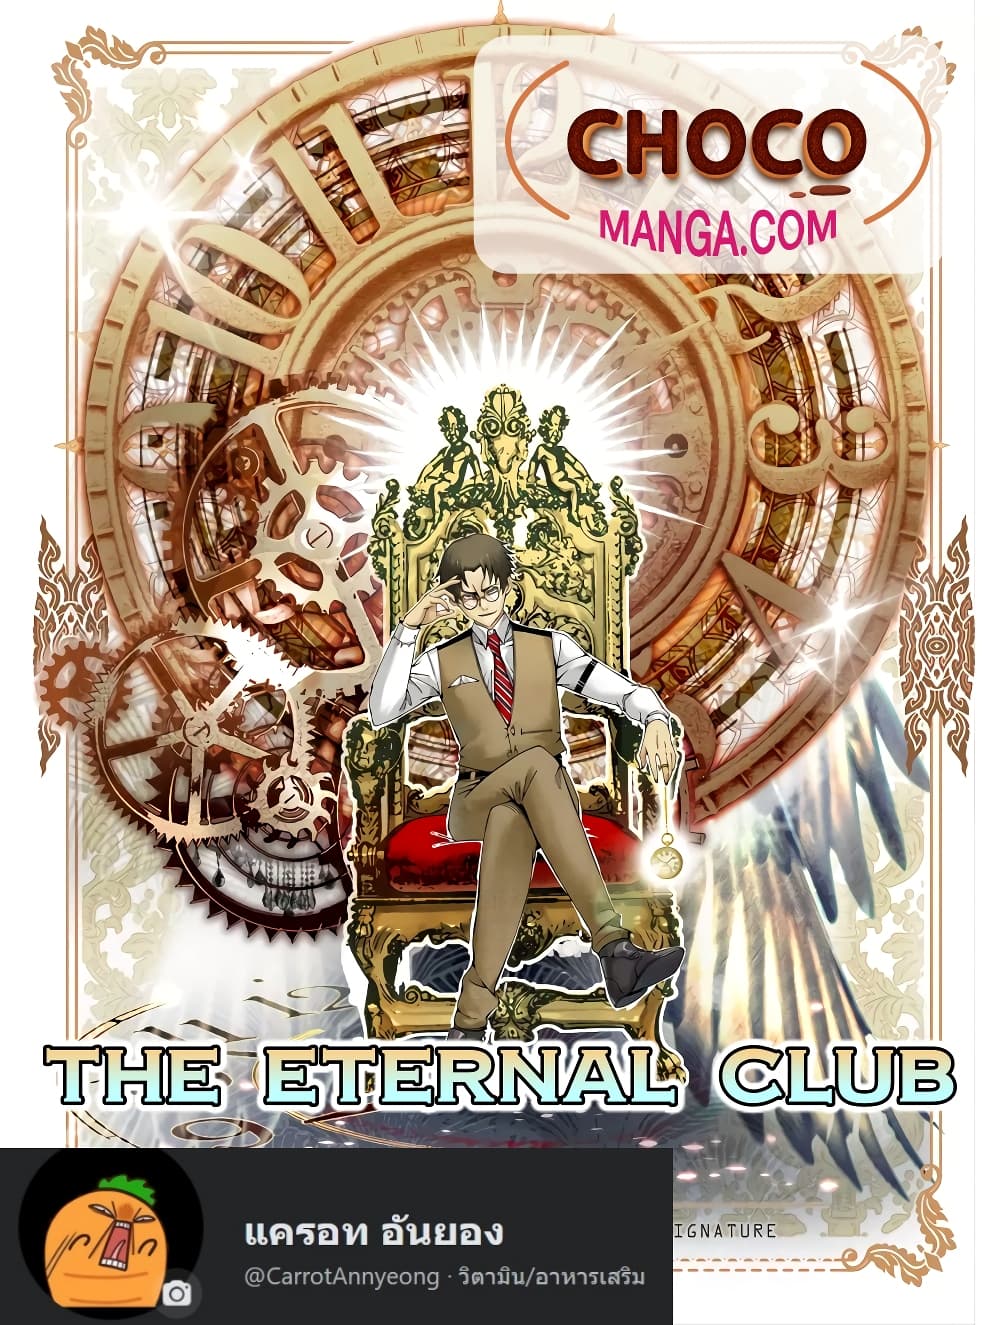 The Eternal Club à¸•à¸­à¸™à¸—à¸µà¹ˆ 59 (1)